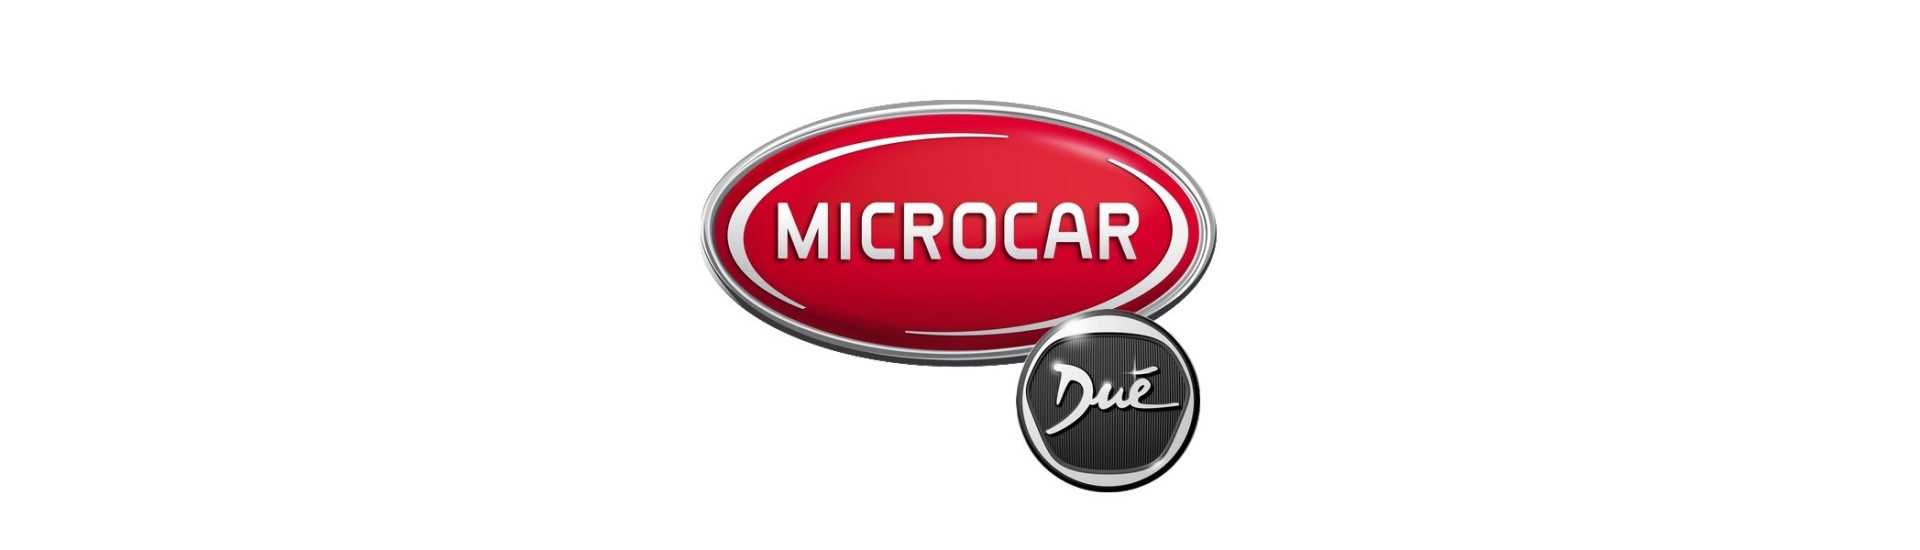 Réservoir au meilleur prix pour voiture sans permis Microcar Dué